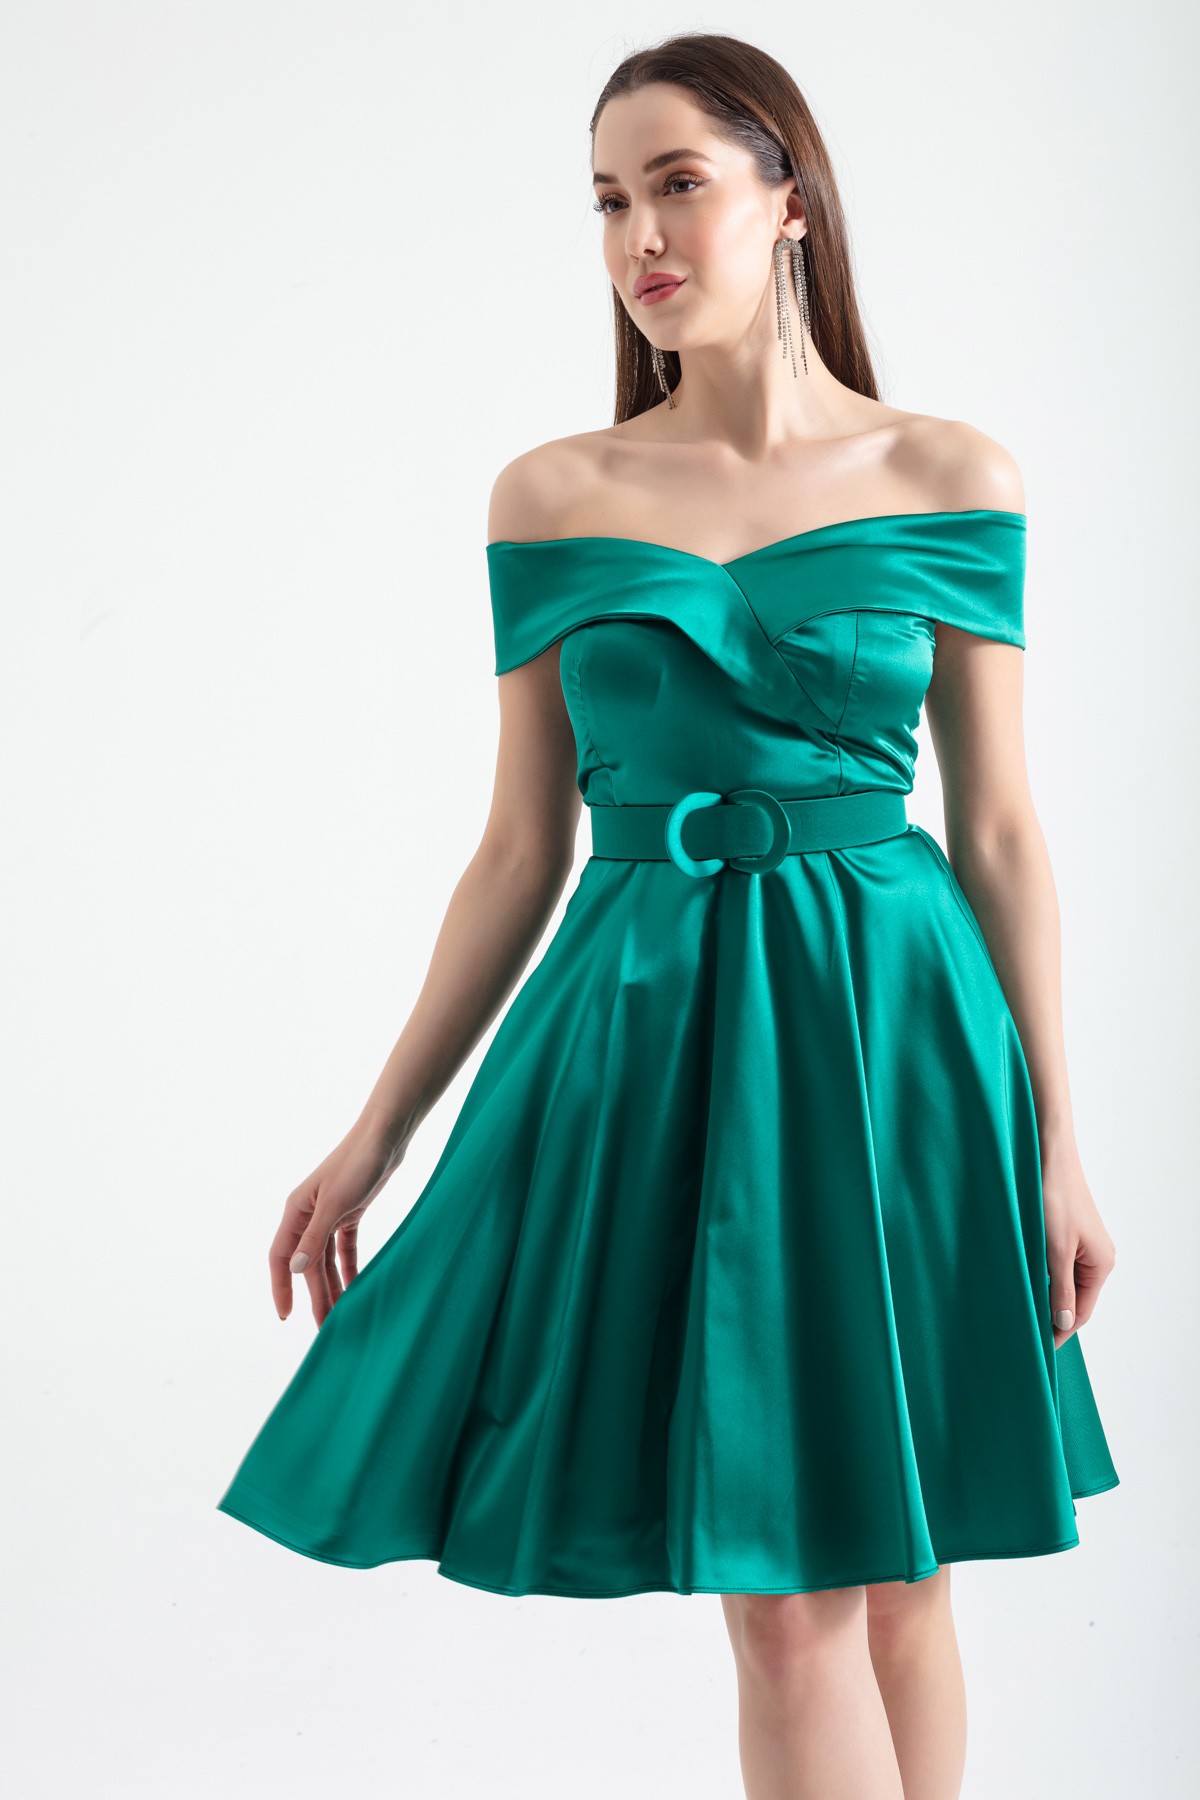 Kadın Kayık Yaka Kemerli Saten Abiye Elbise - Zümrüt Yeşili